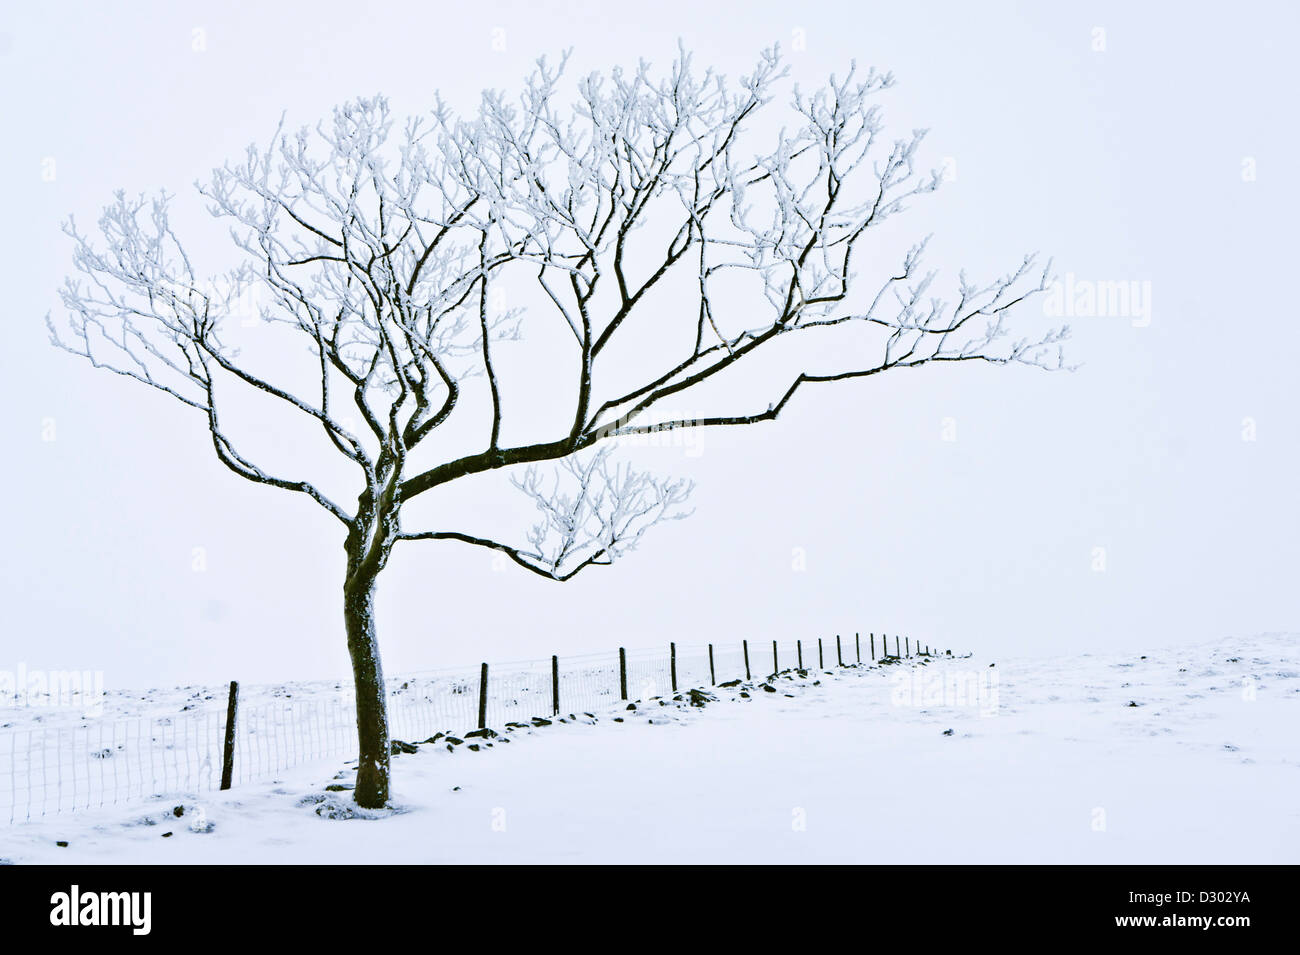 Paesaggio invernale albero coperto di neve contro una recinzione metallica vicino a Rushup Edge Derbyshire Peak District National Park Inghilterra Regno Unito GB Europa Foto Stock